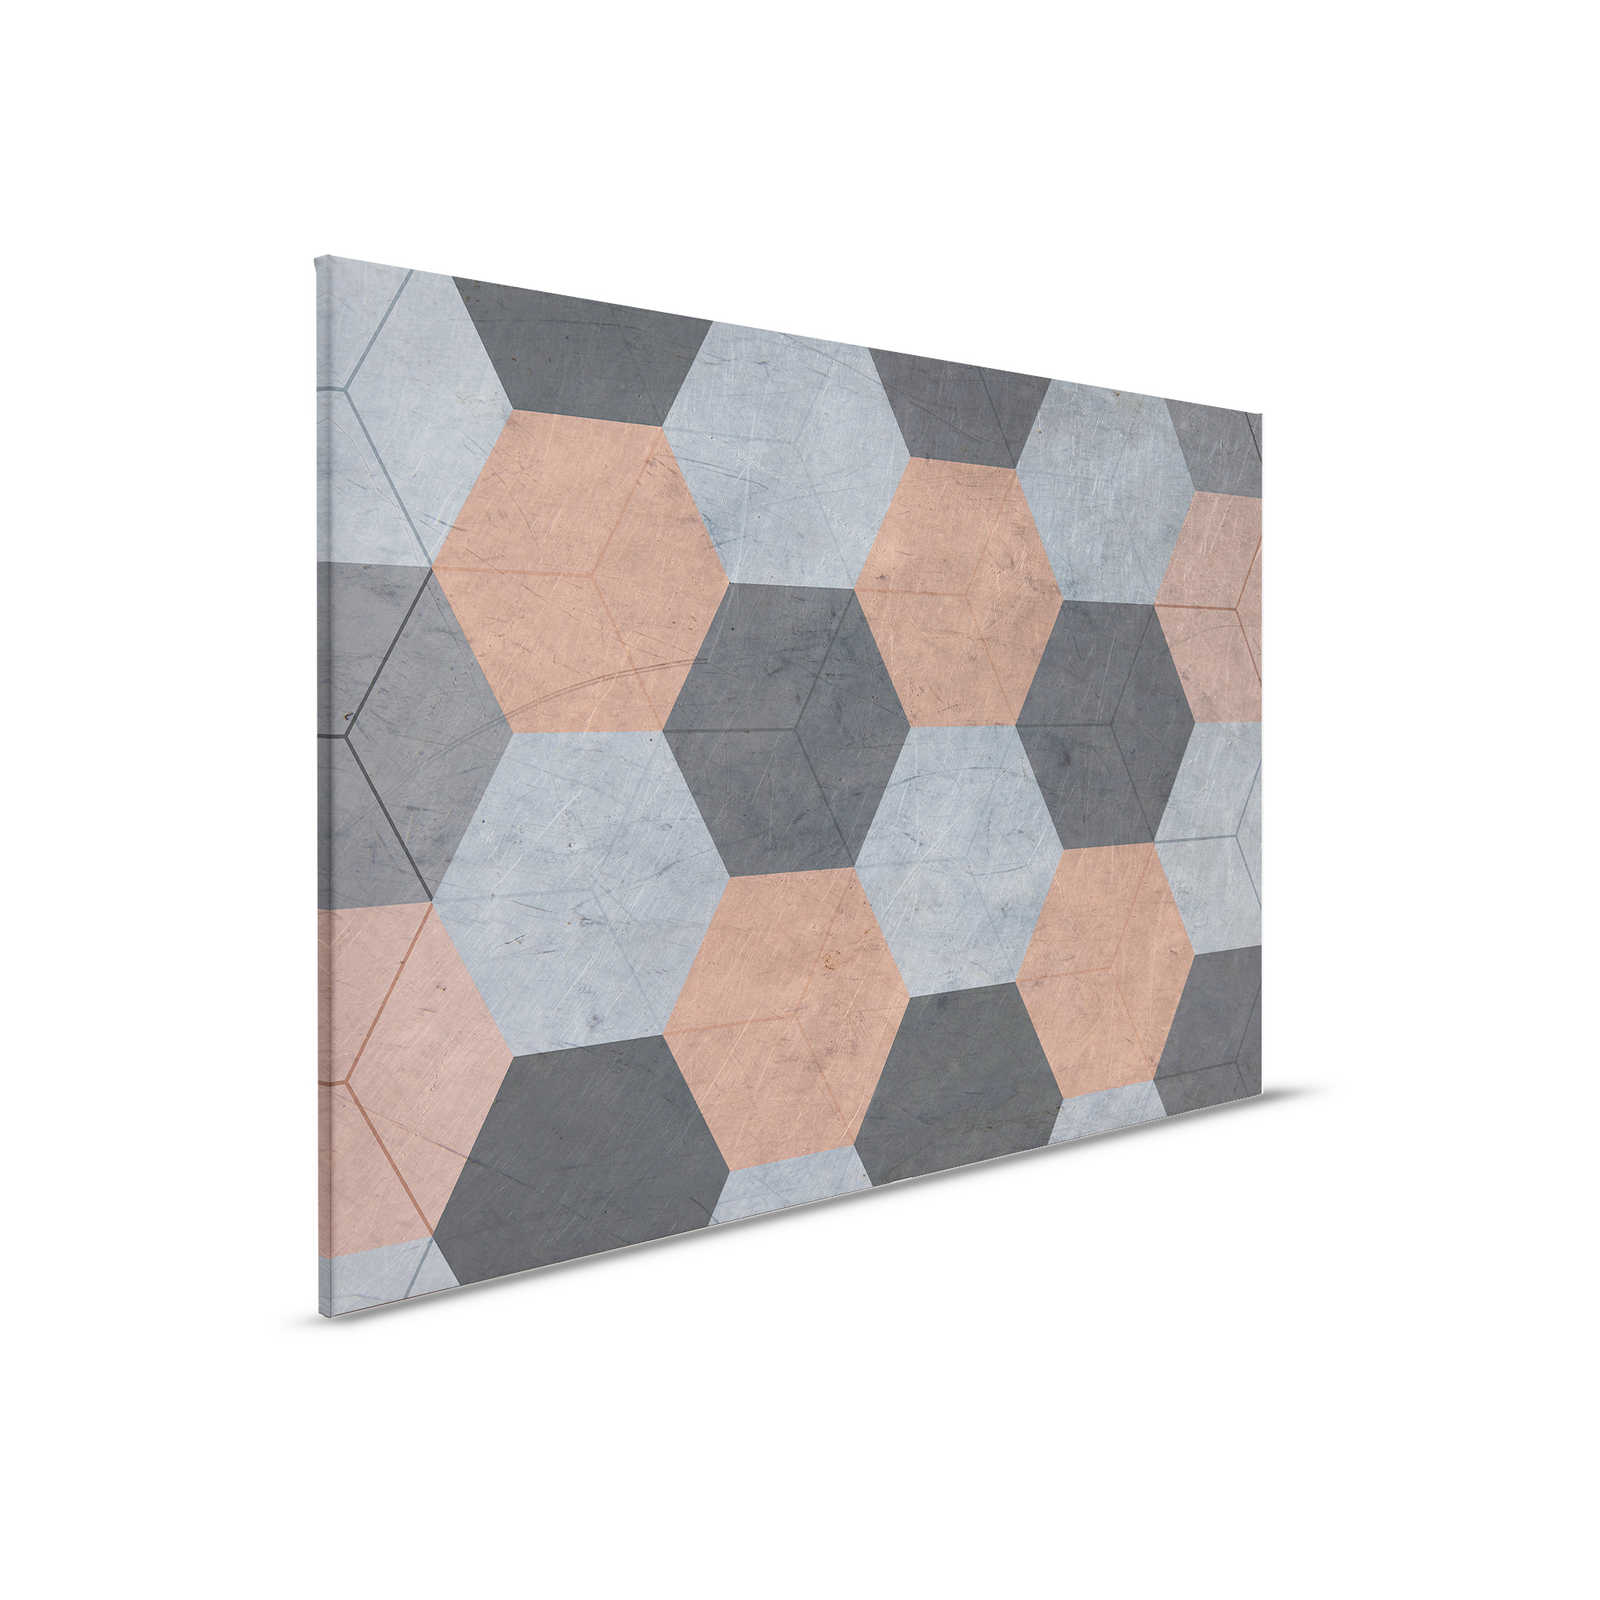         Vintage Style Hexagon Tile Canvas Painting - 0.90 m x 0.60 m
    